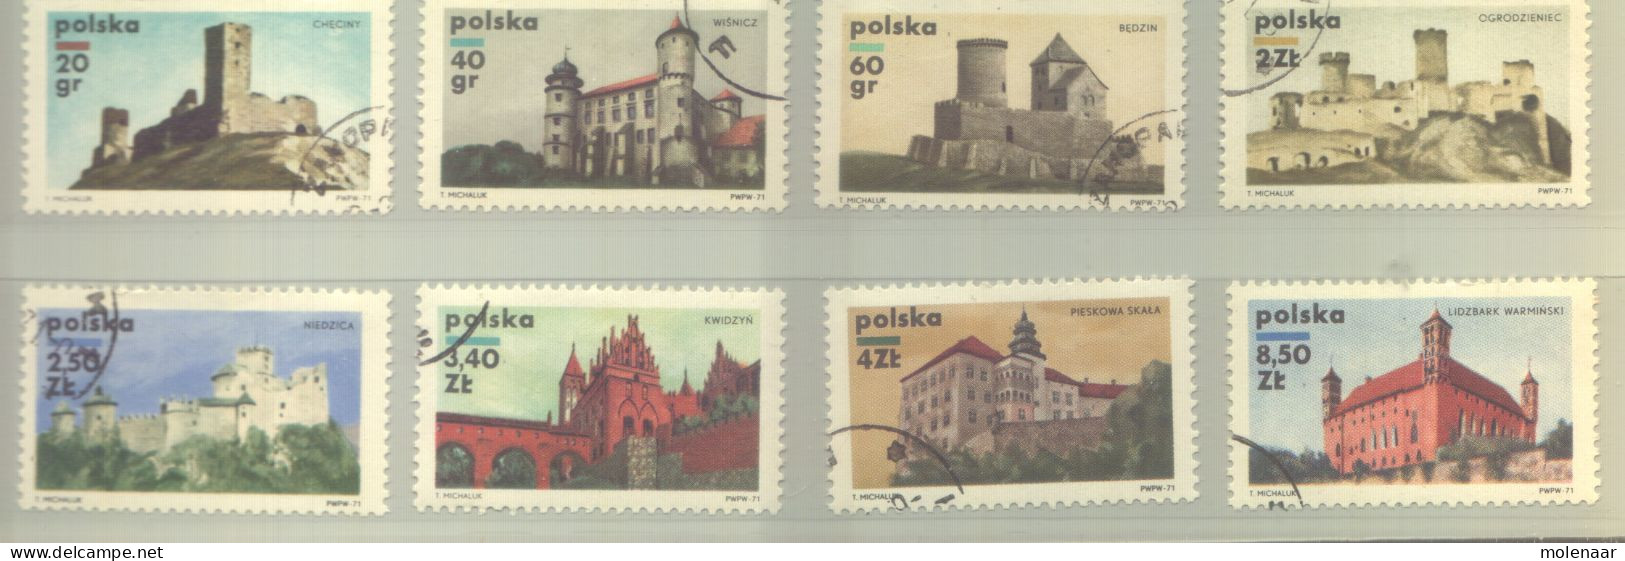 Postzegels > Europa > Polen > 1944-.... Republiek > 1981-90 > Gebruikt 2054-2061 (12190) - Gebraucht